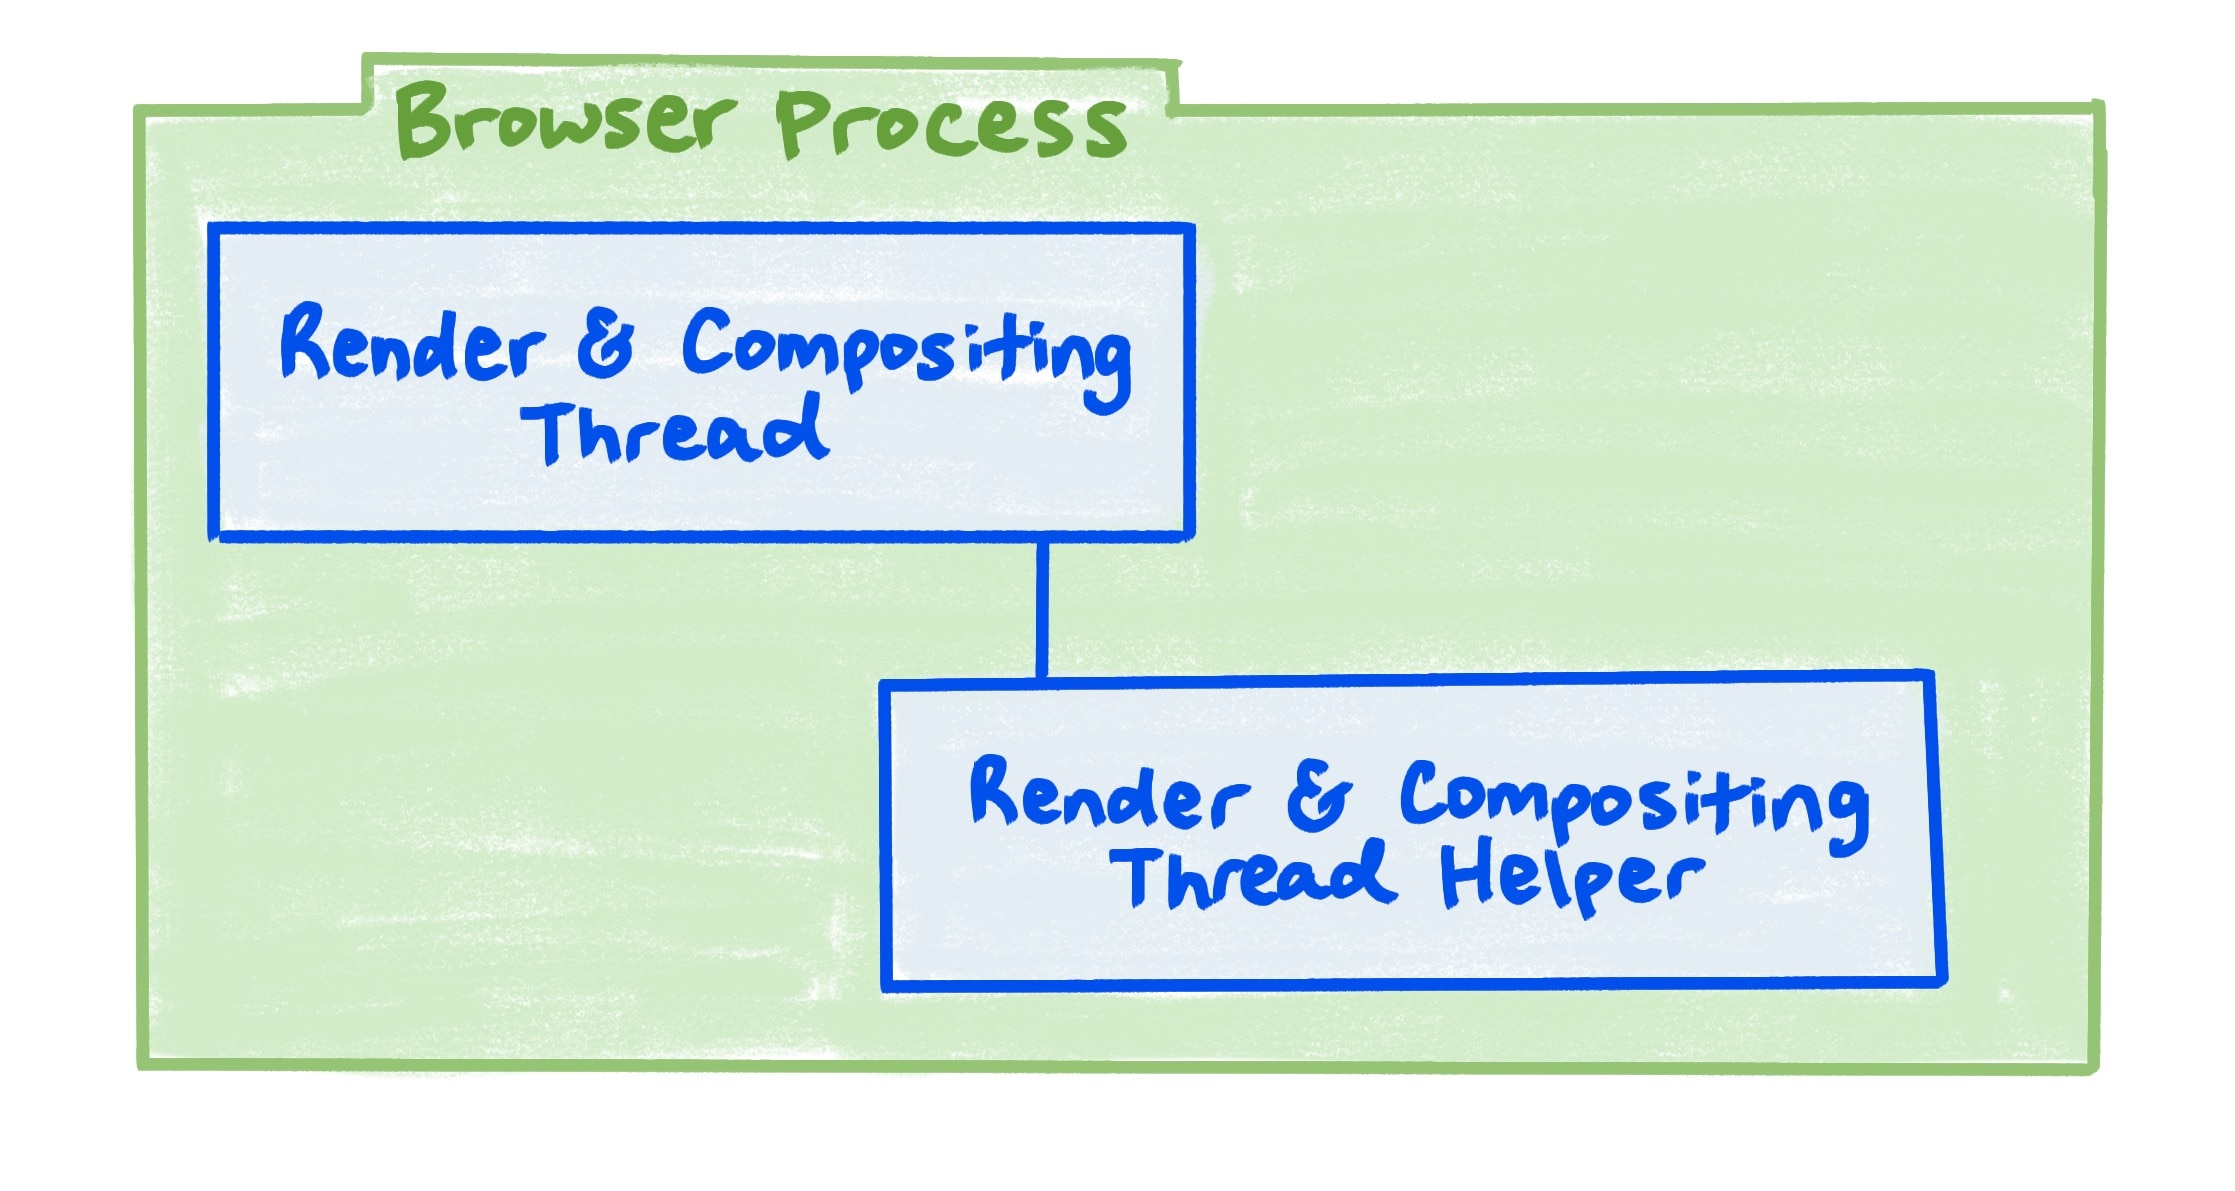 Диаграмма процесса браузера, показывающая взаимосвязь между потоками рендеринга и компоновки, а также вспомогательным потоком рендеринга и компоновки.